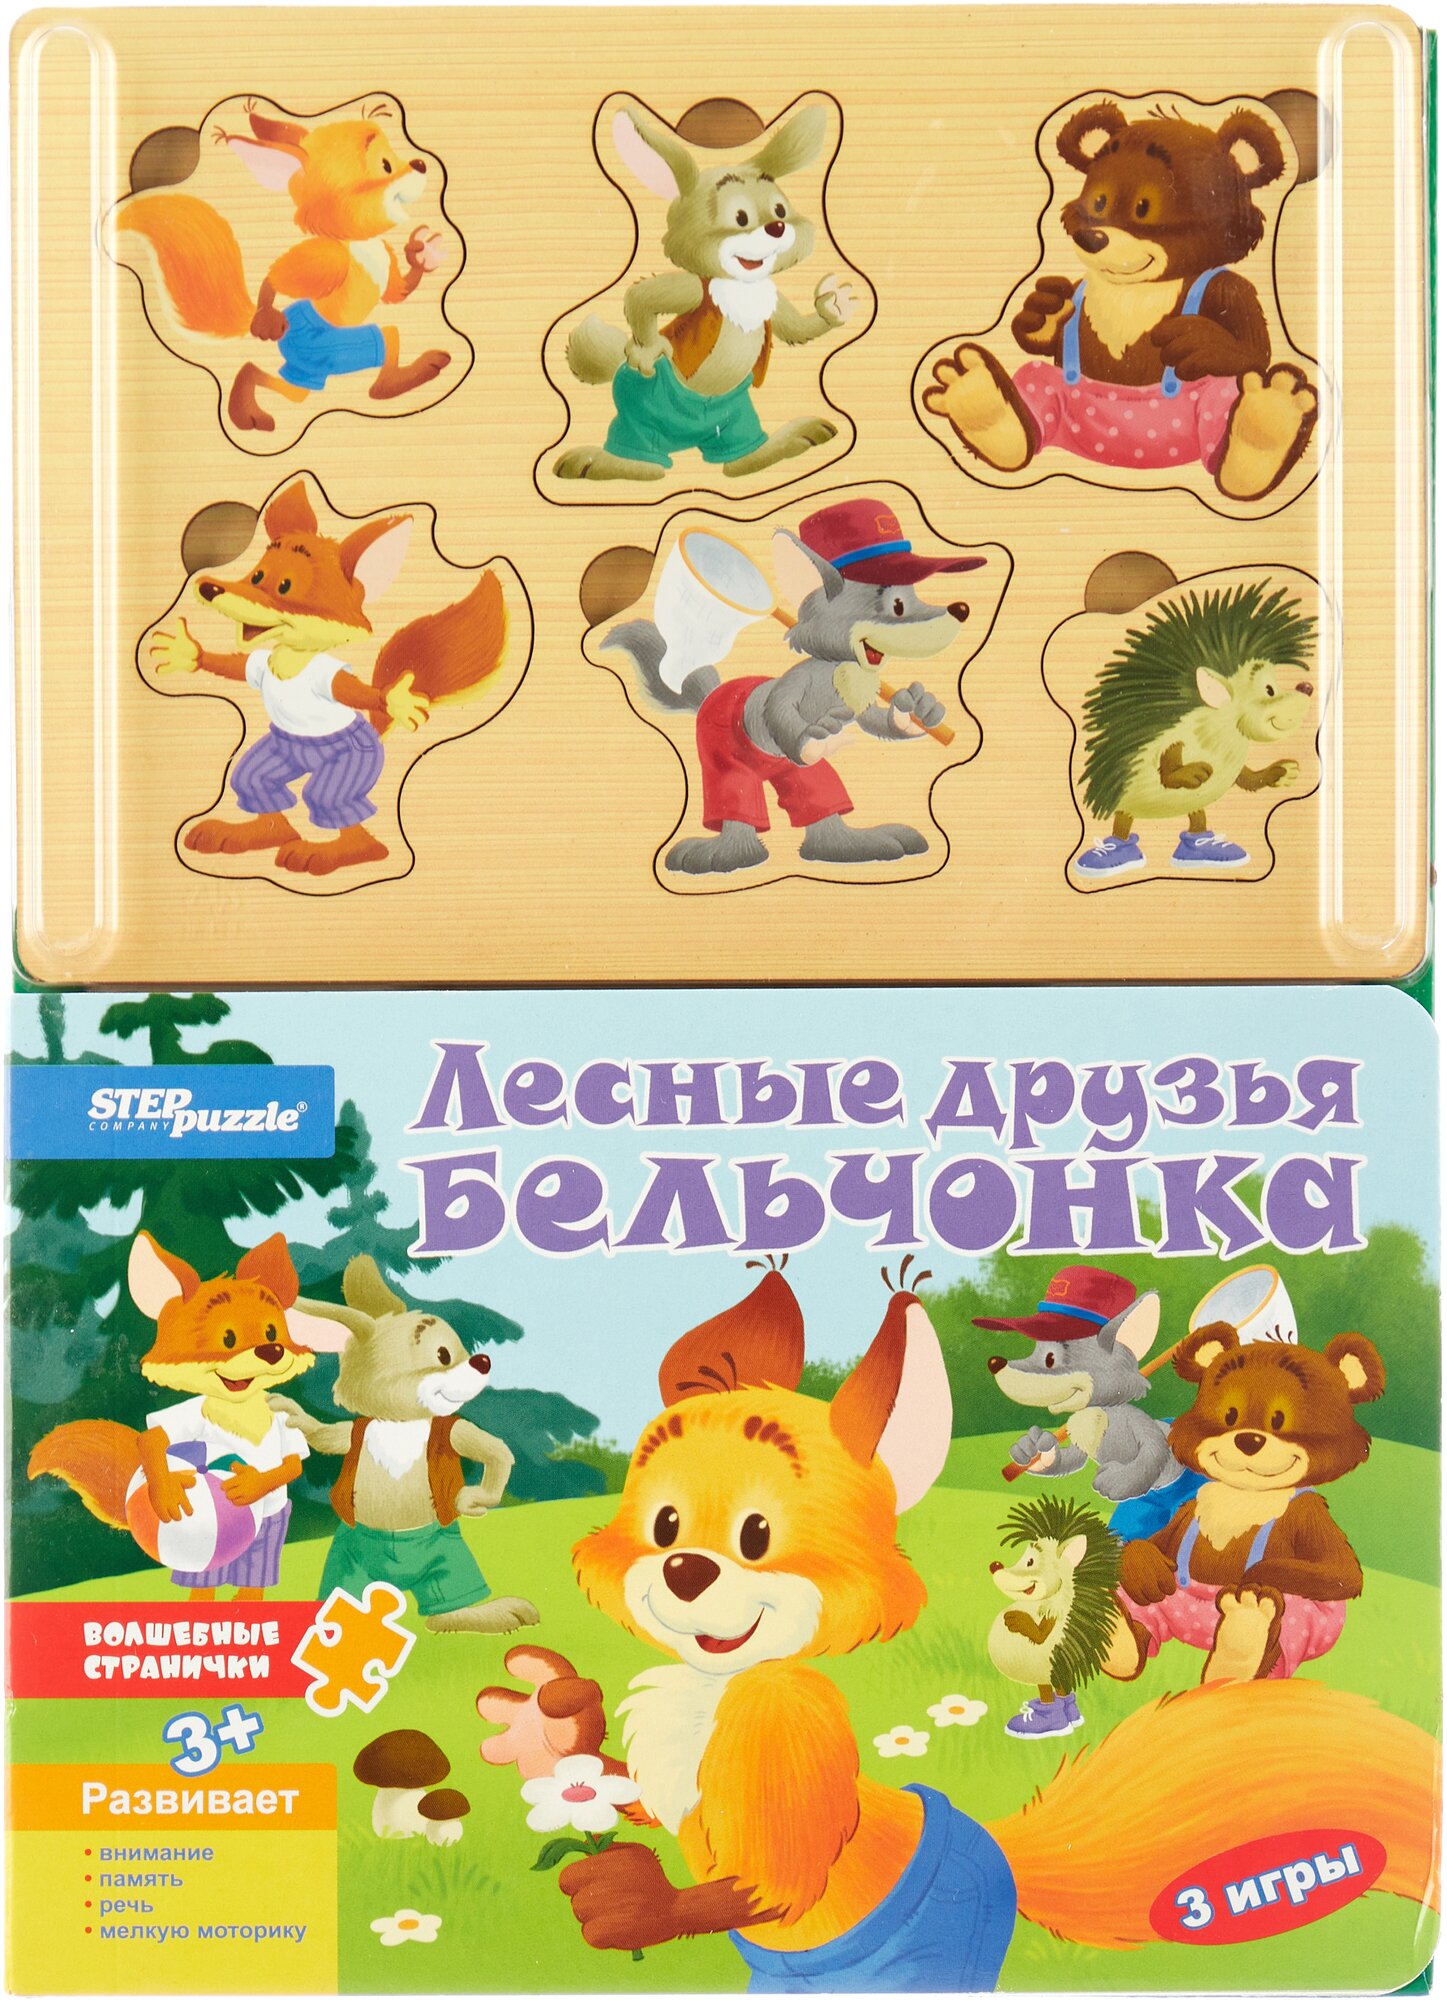 Книжка-игрушка "Лесные друзья бельчонка" (93307) - фото №1